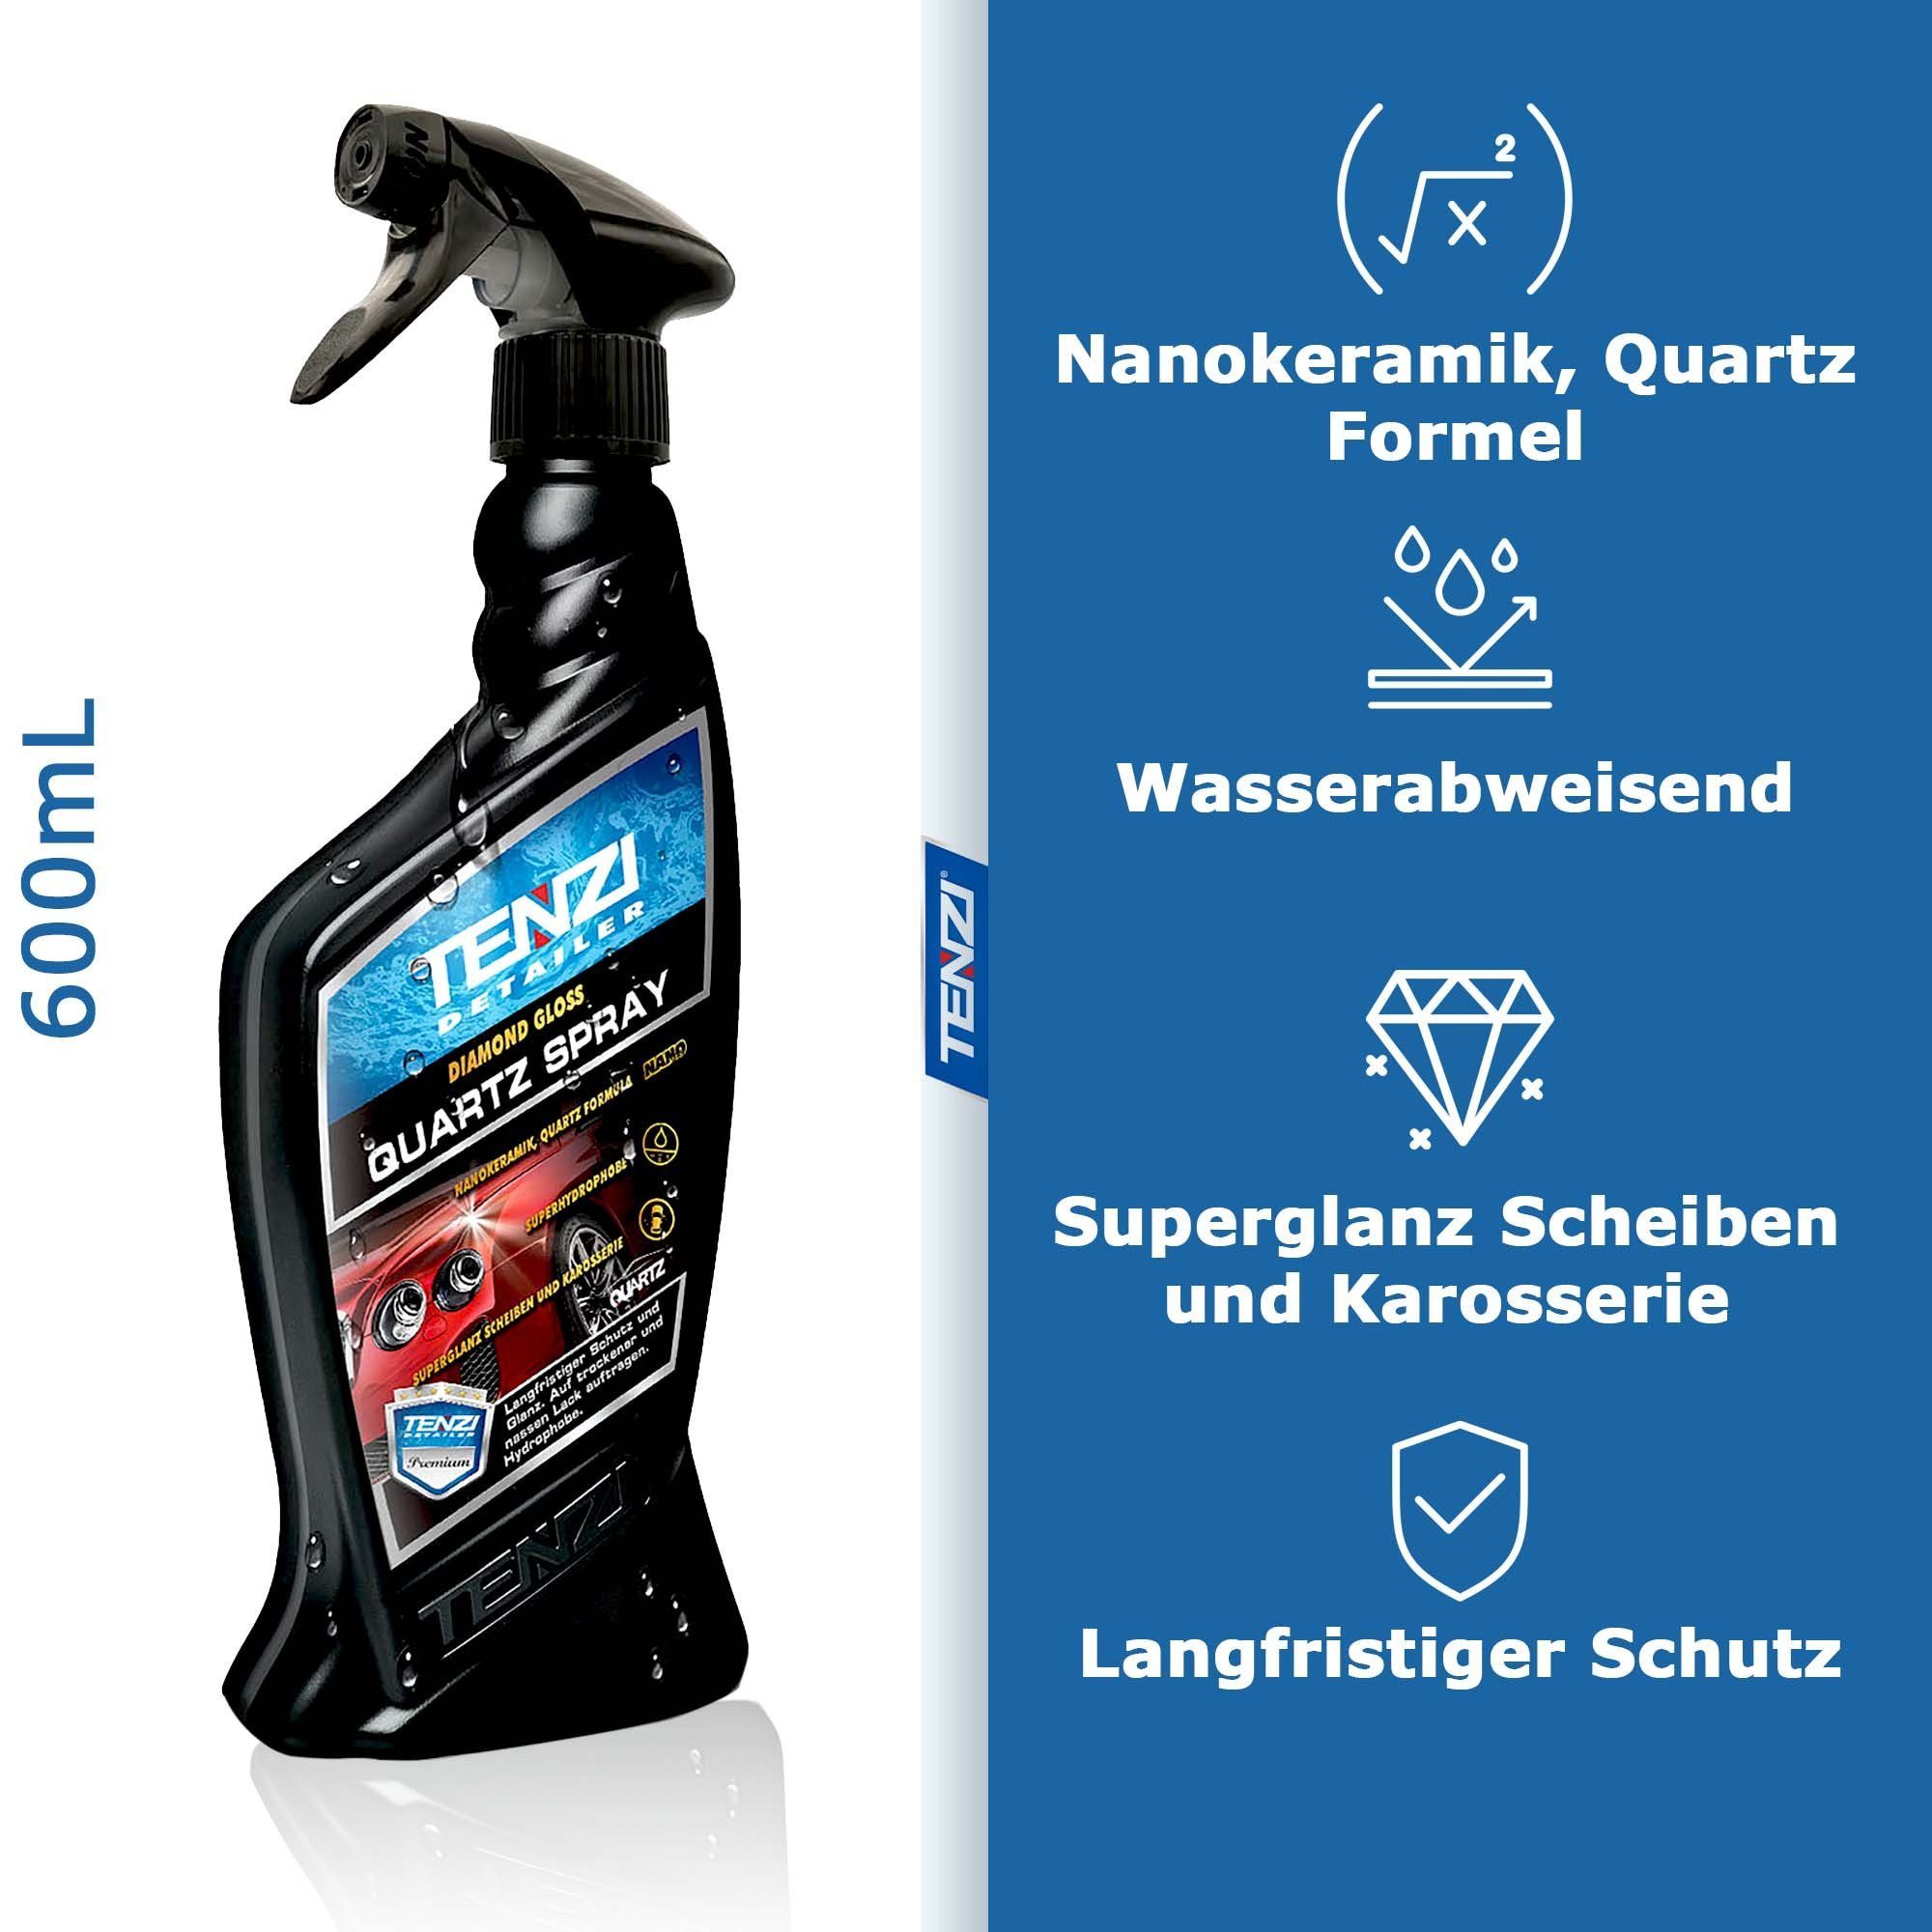 (1 TENZI Formel Nano Politur, Spray Ceramic Wasserabweisend, Quartz St), Versiegelung, Autopolitur 600mL